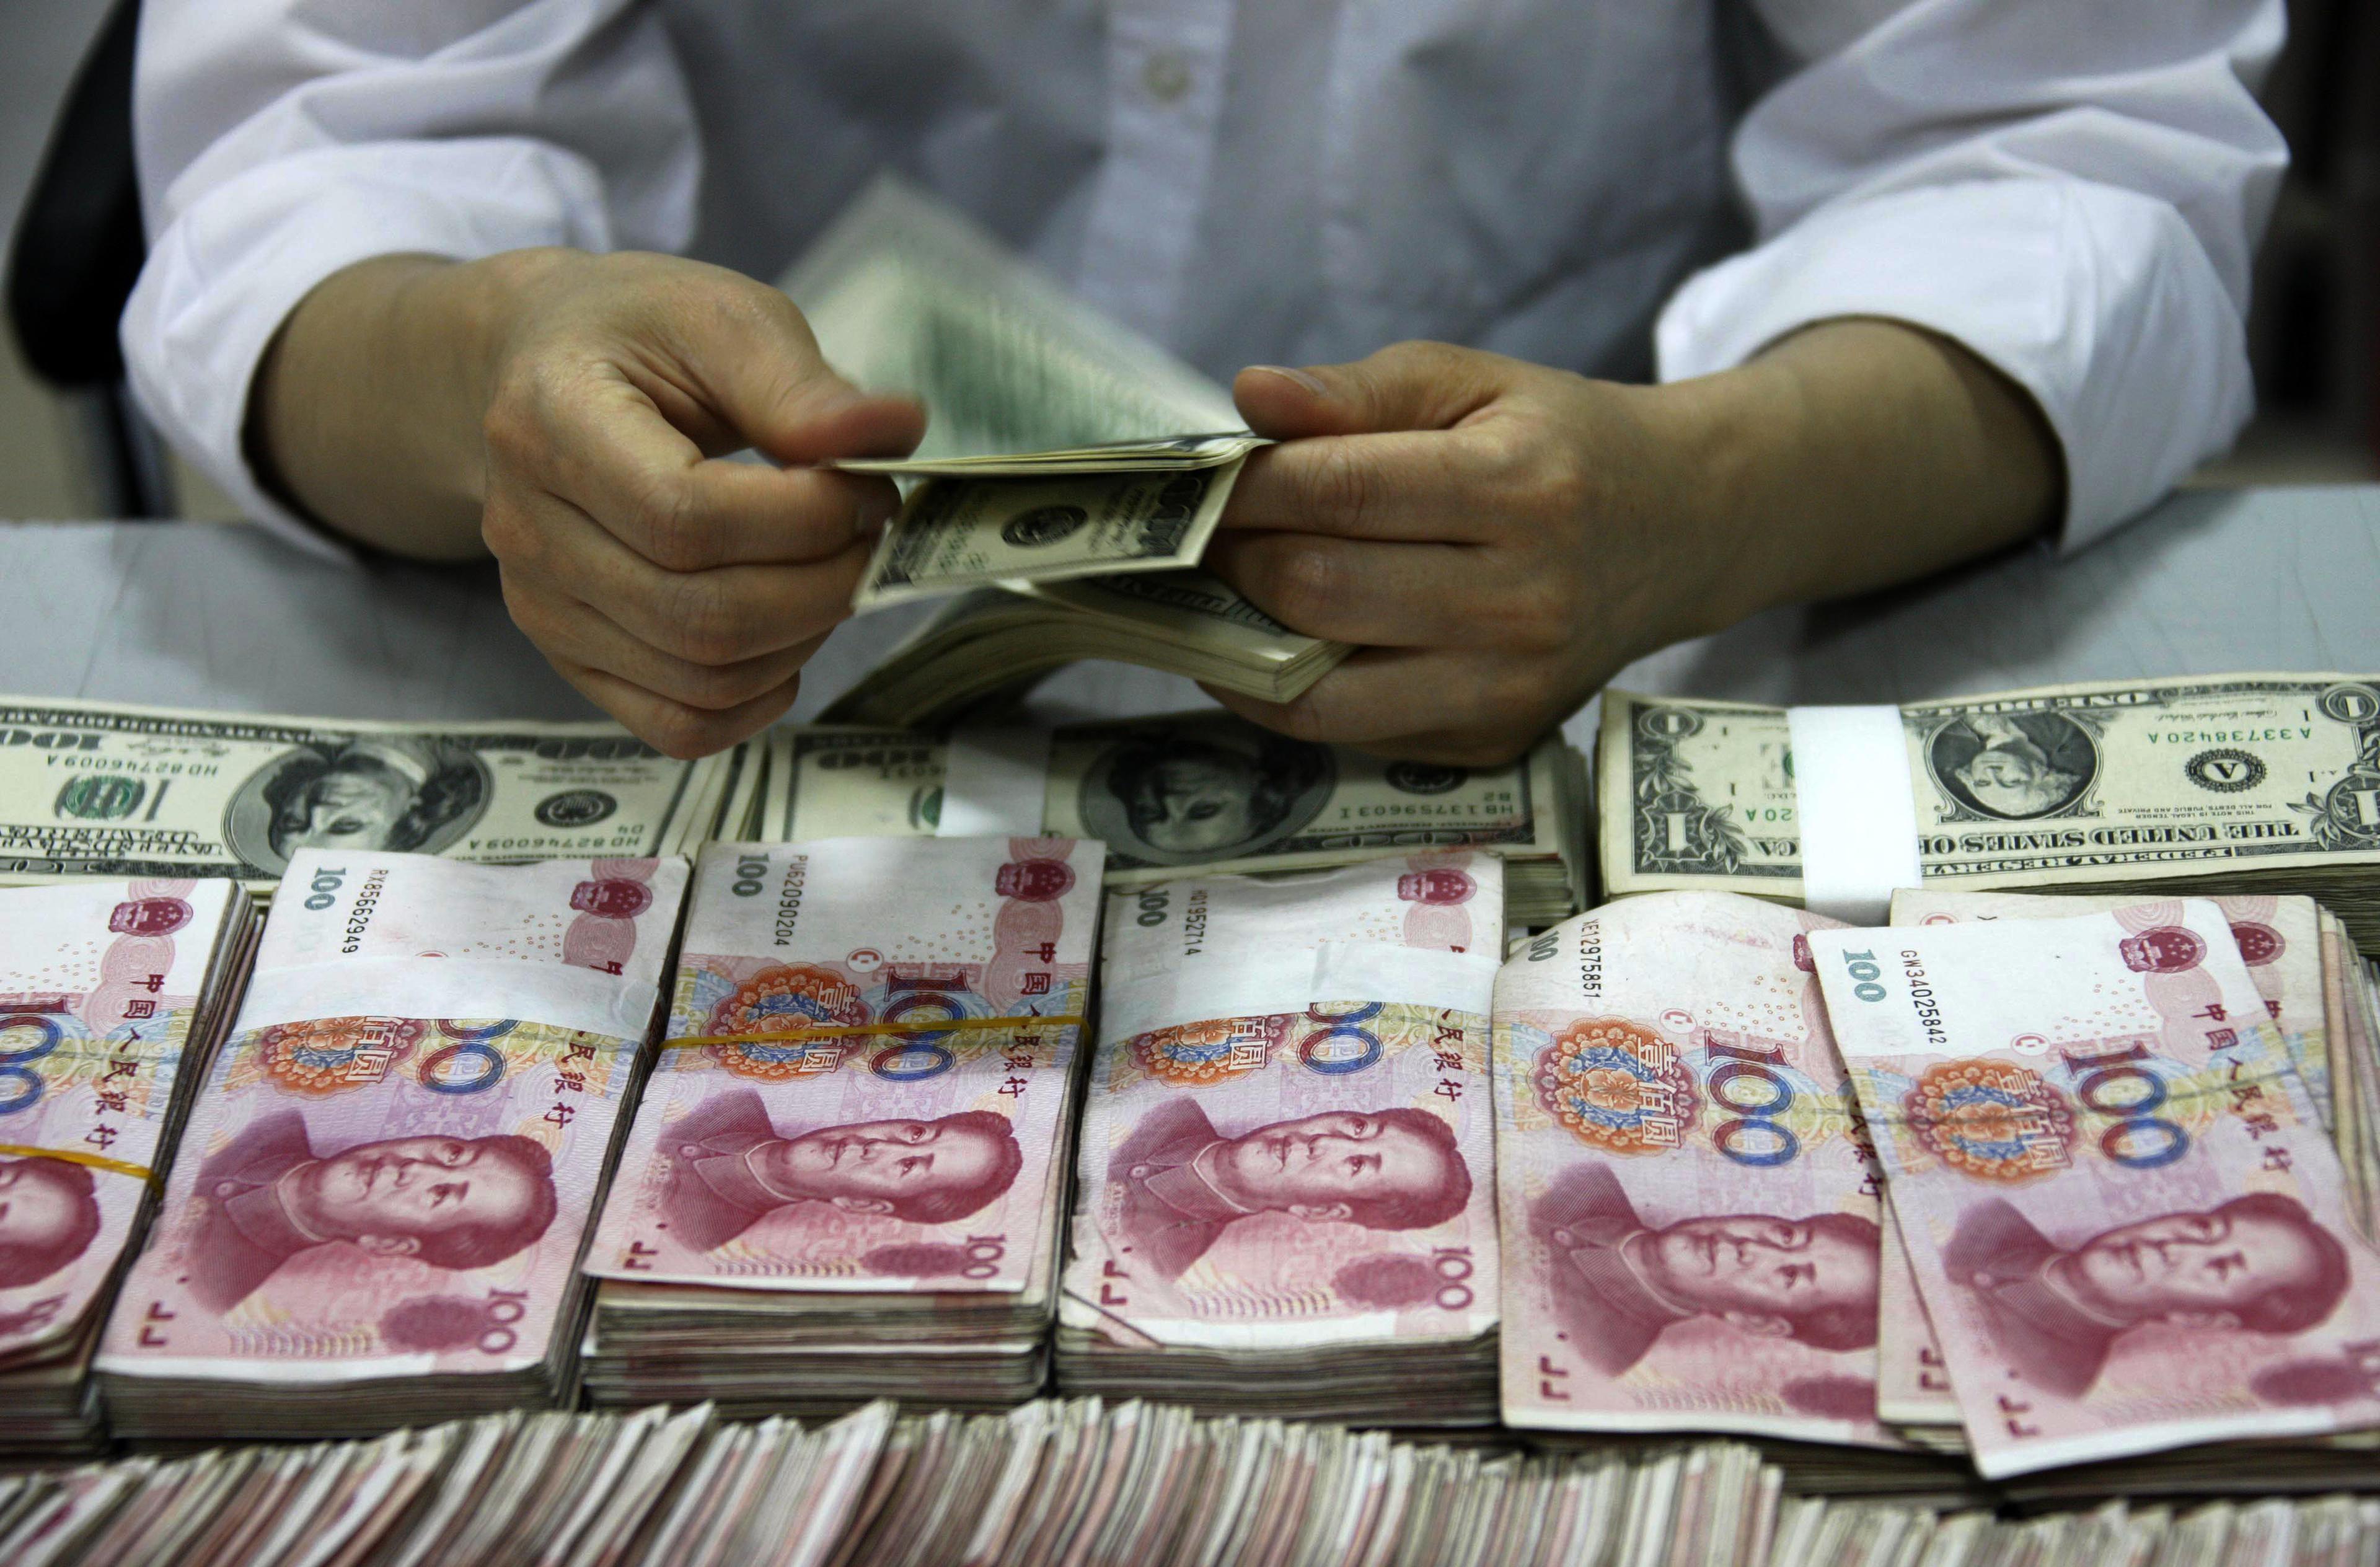 Kinas illegala banksystem omsätter hundratals miljarder. Nu har det största nätverket hittills avslöjats, enligt statliga medier. (STR/AFP/Getty Images)